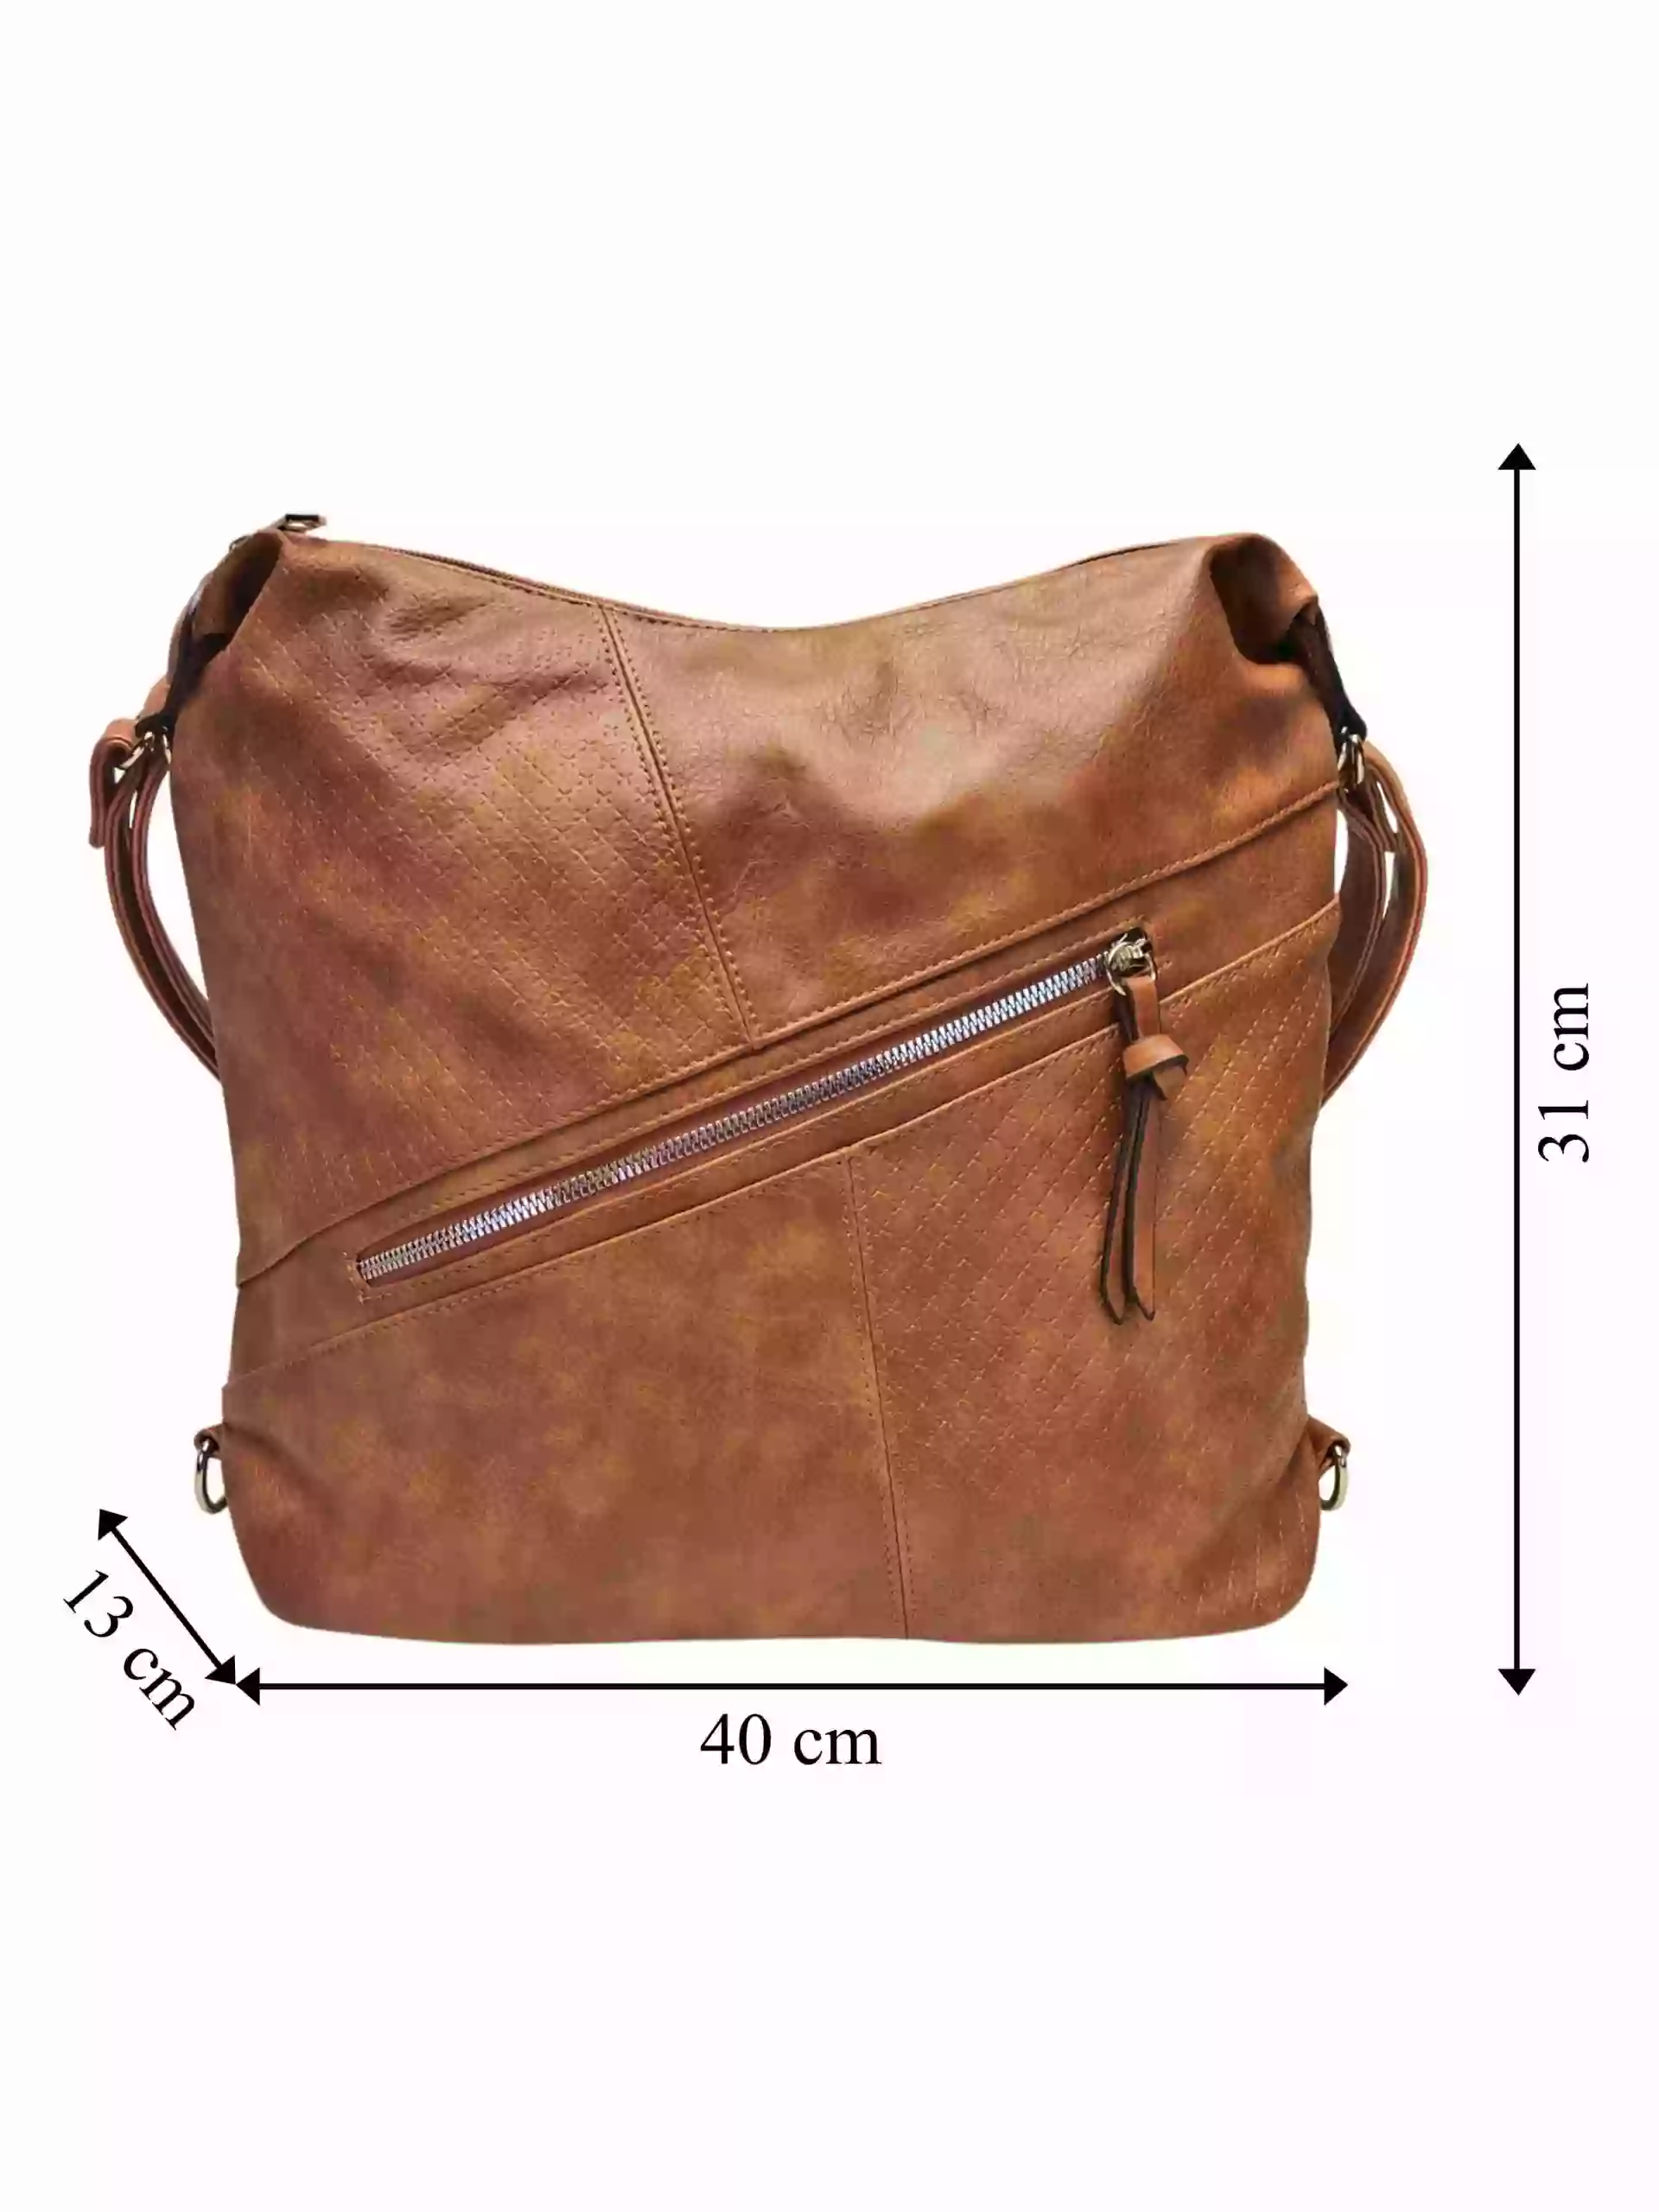 Velký středně hnědý kabelko-batoh s šikmou kapsou, Tapple, H18077N2, přední strana kabelko-batohu 2v1 s rozměry